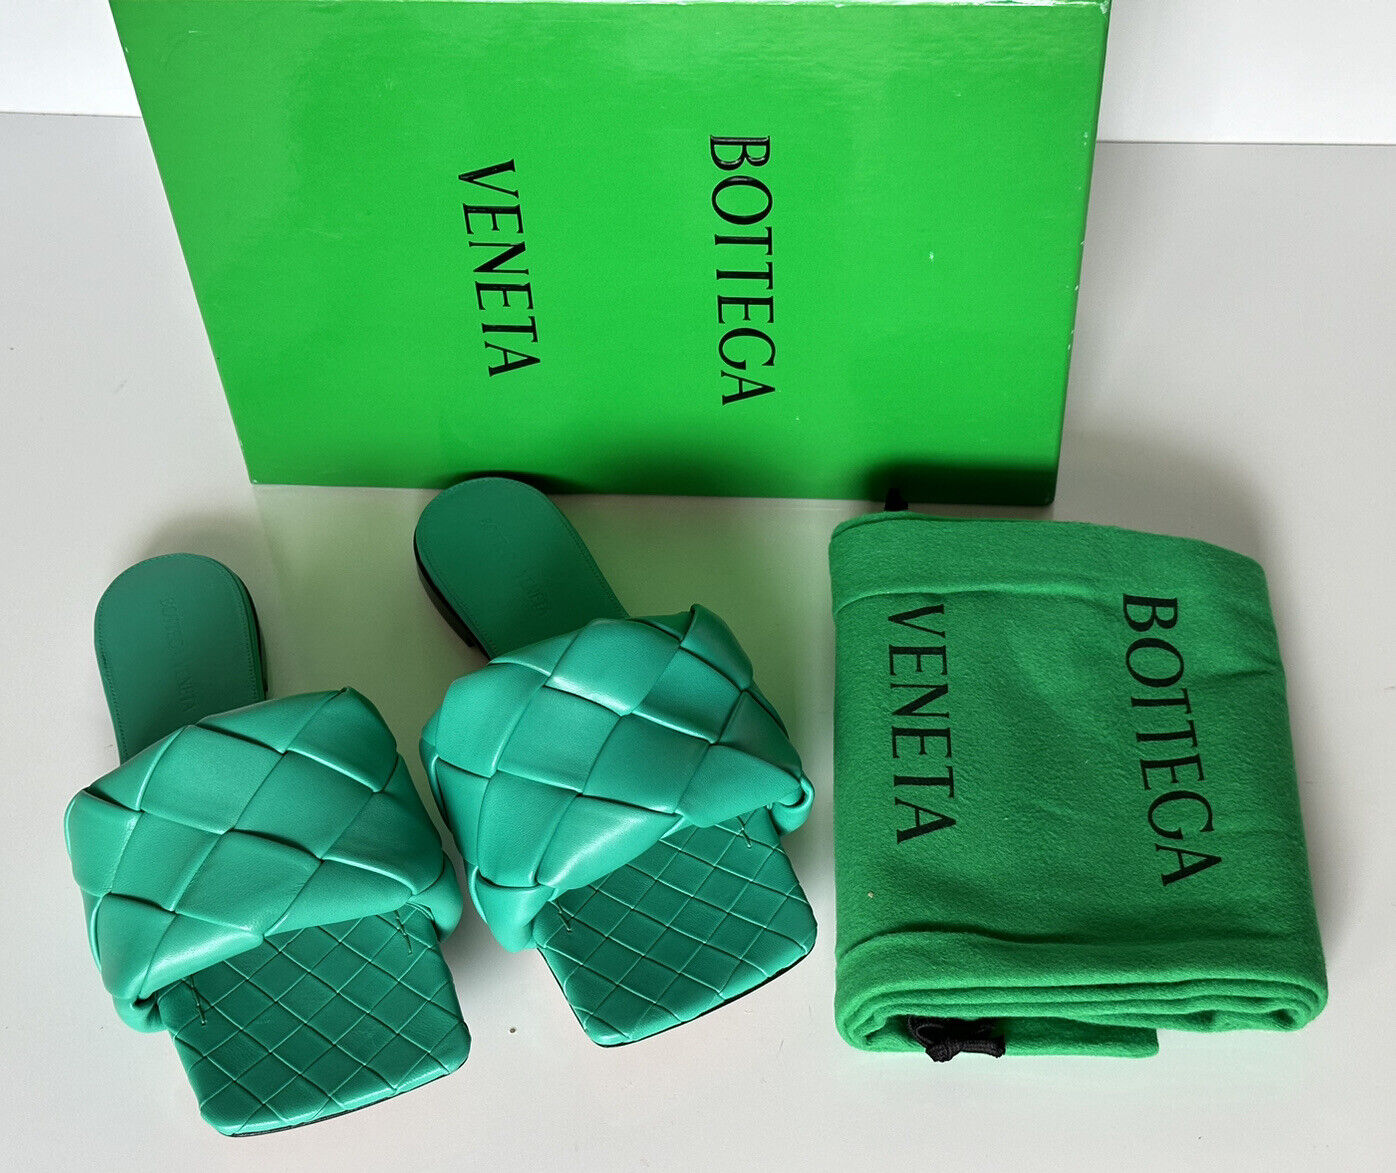 NWT 1350 долларов США Bottega Veneta Green Loden Сандалии на плоской подошве Обувь 7,5 США (37,5 ЕС) 608853 